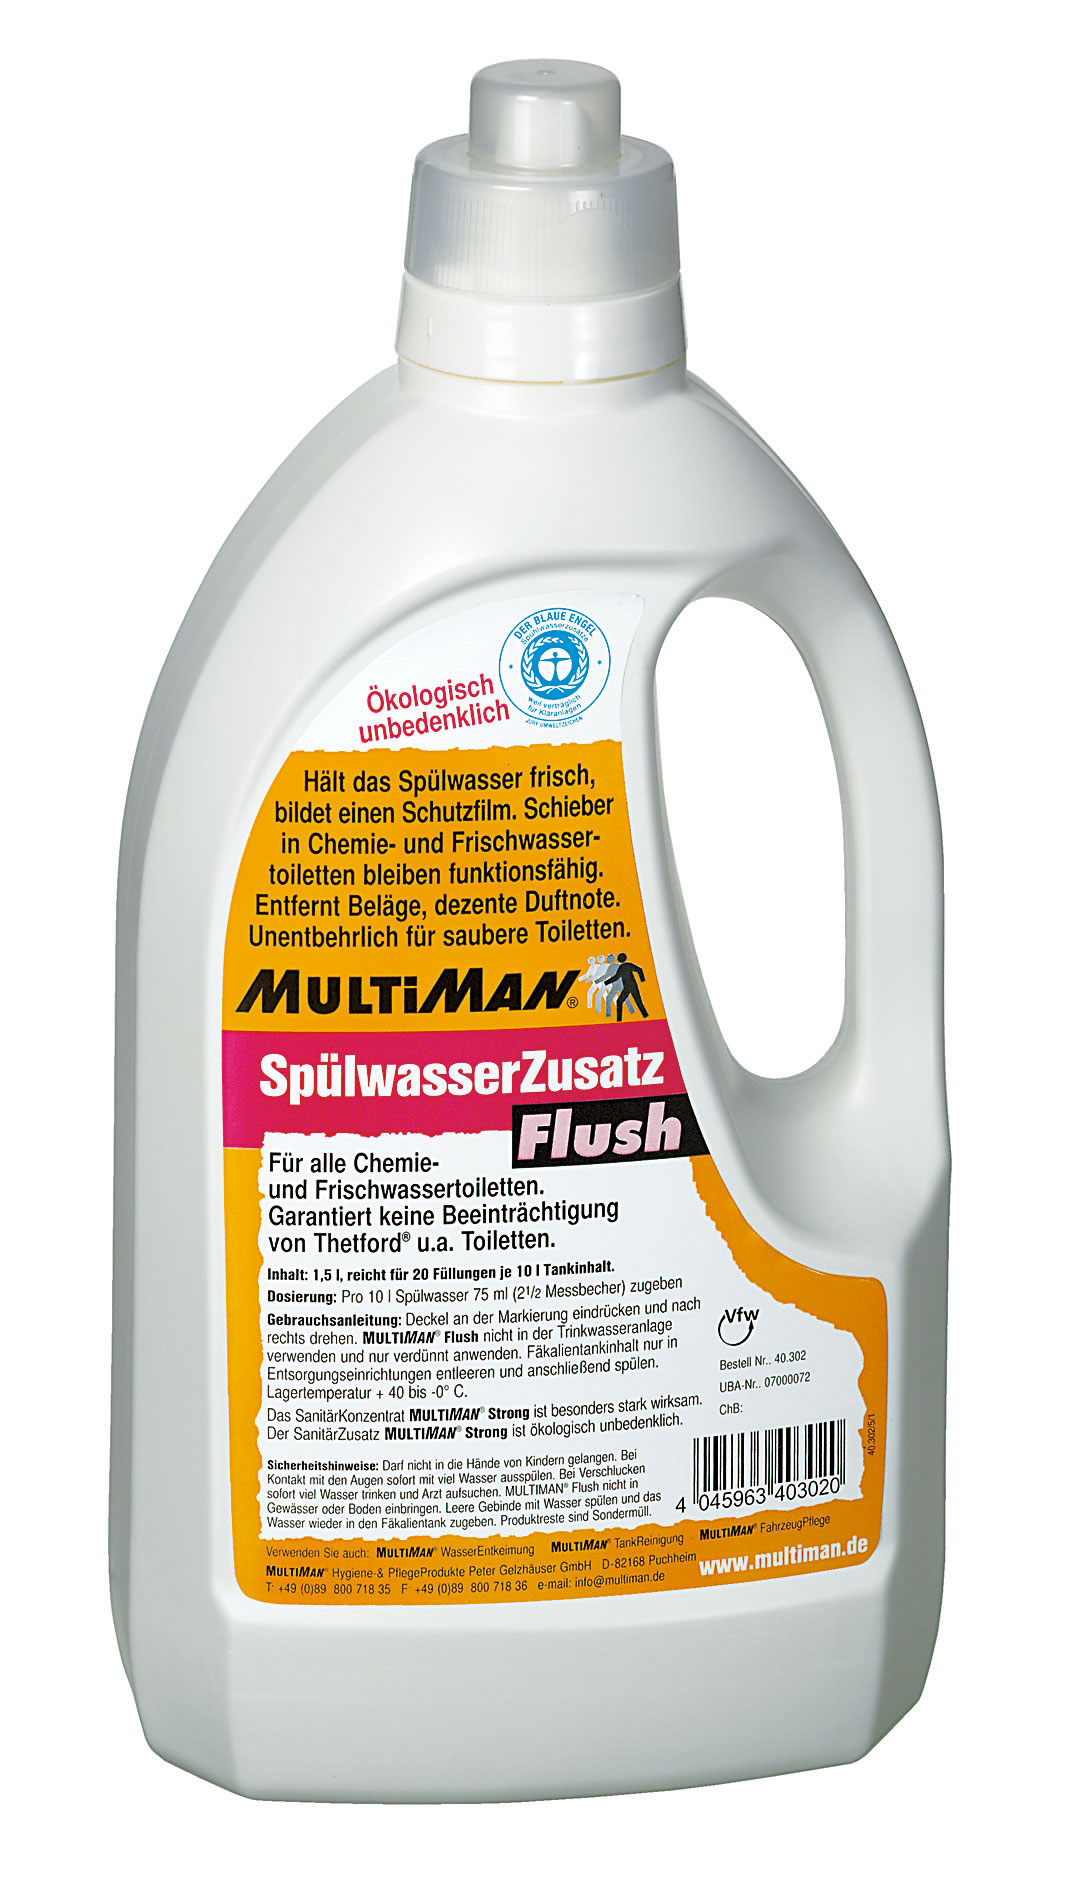 Toilettenchemie_MultiSan_Flush_Sp-hlwasserzusatz_1500_Dosierflasche